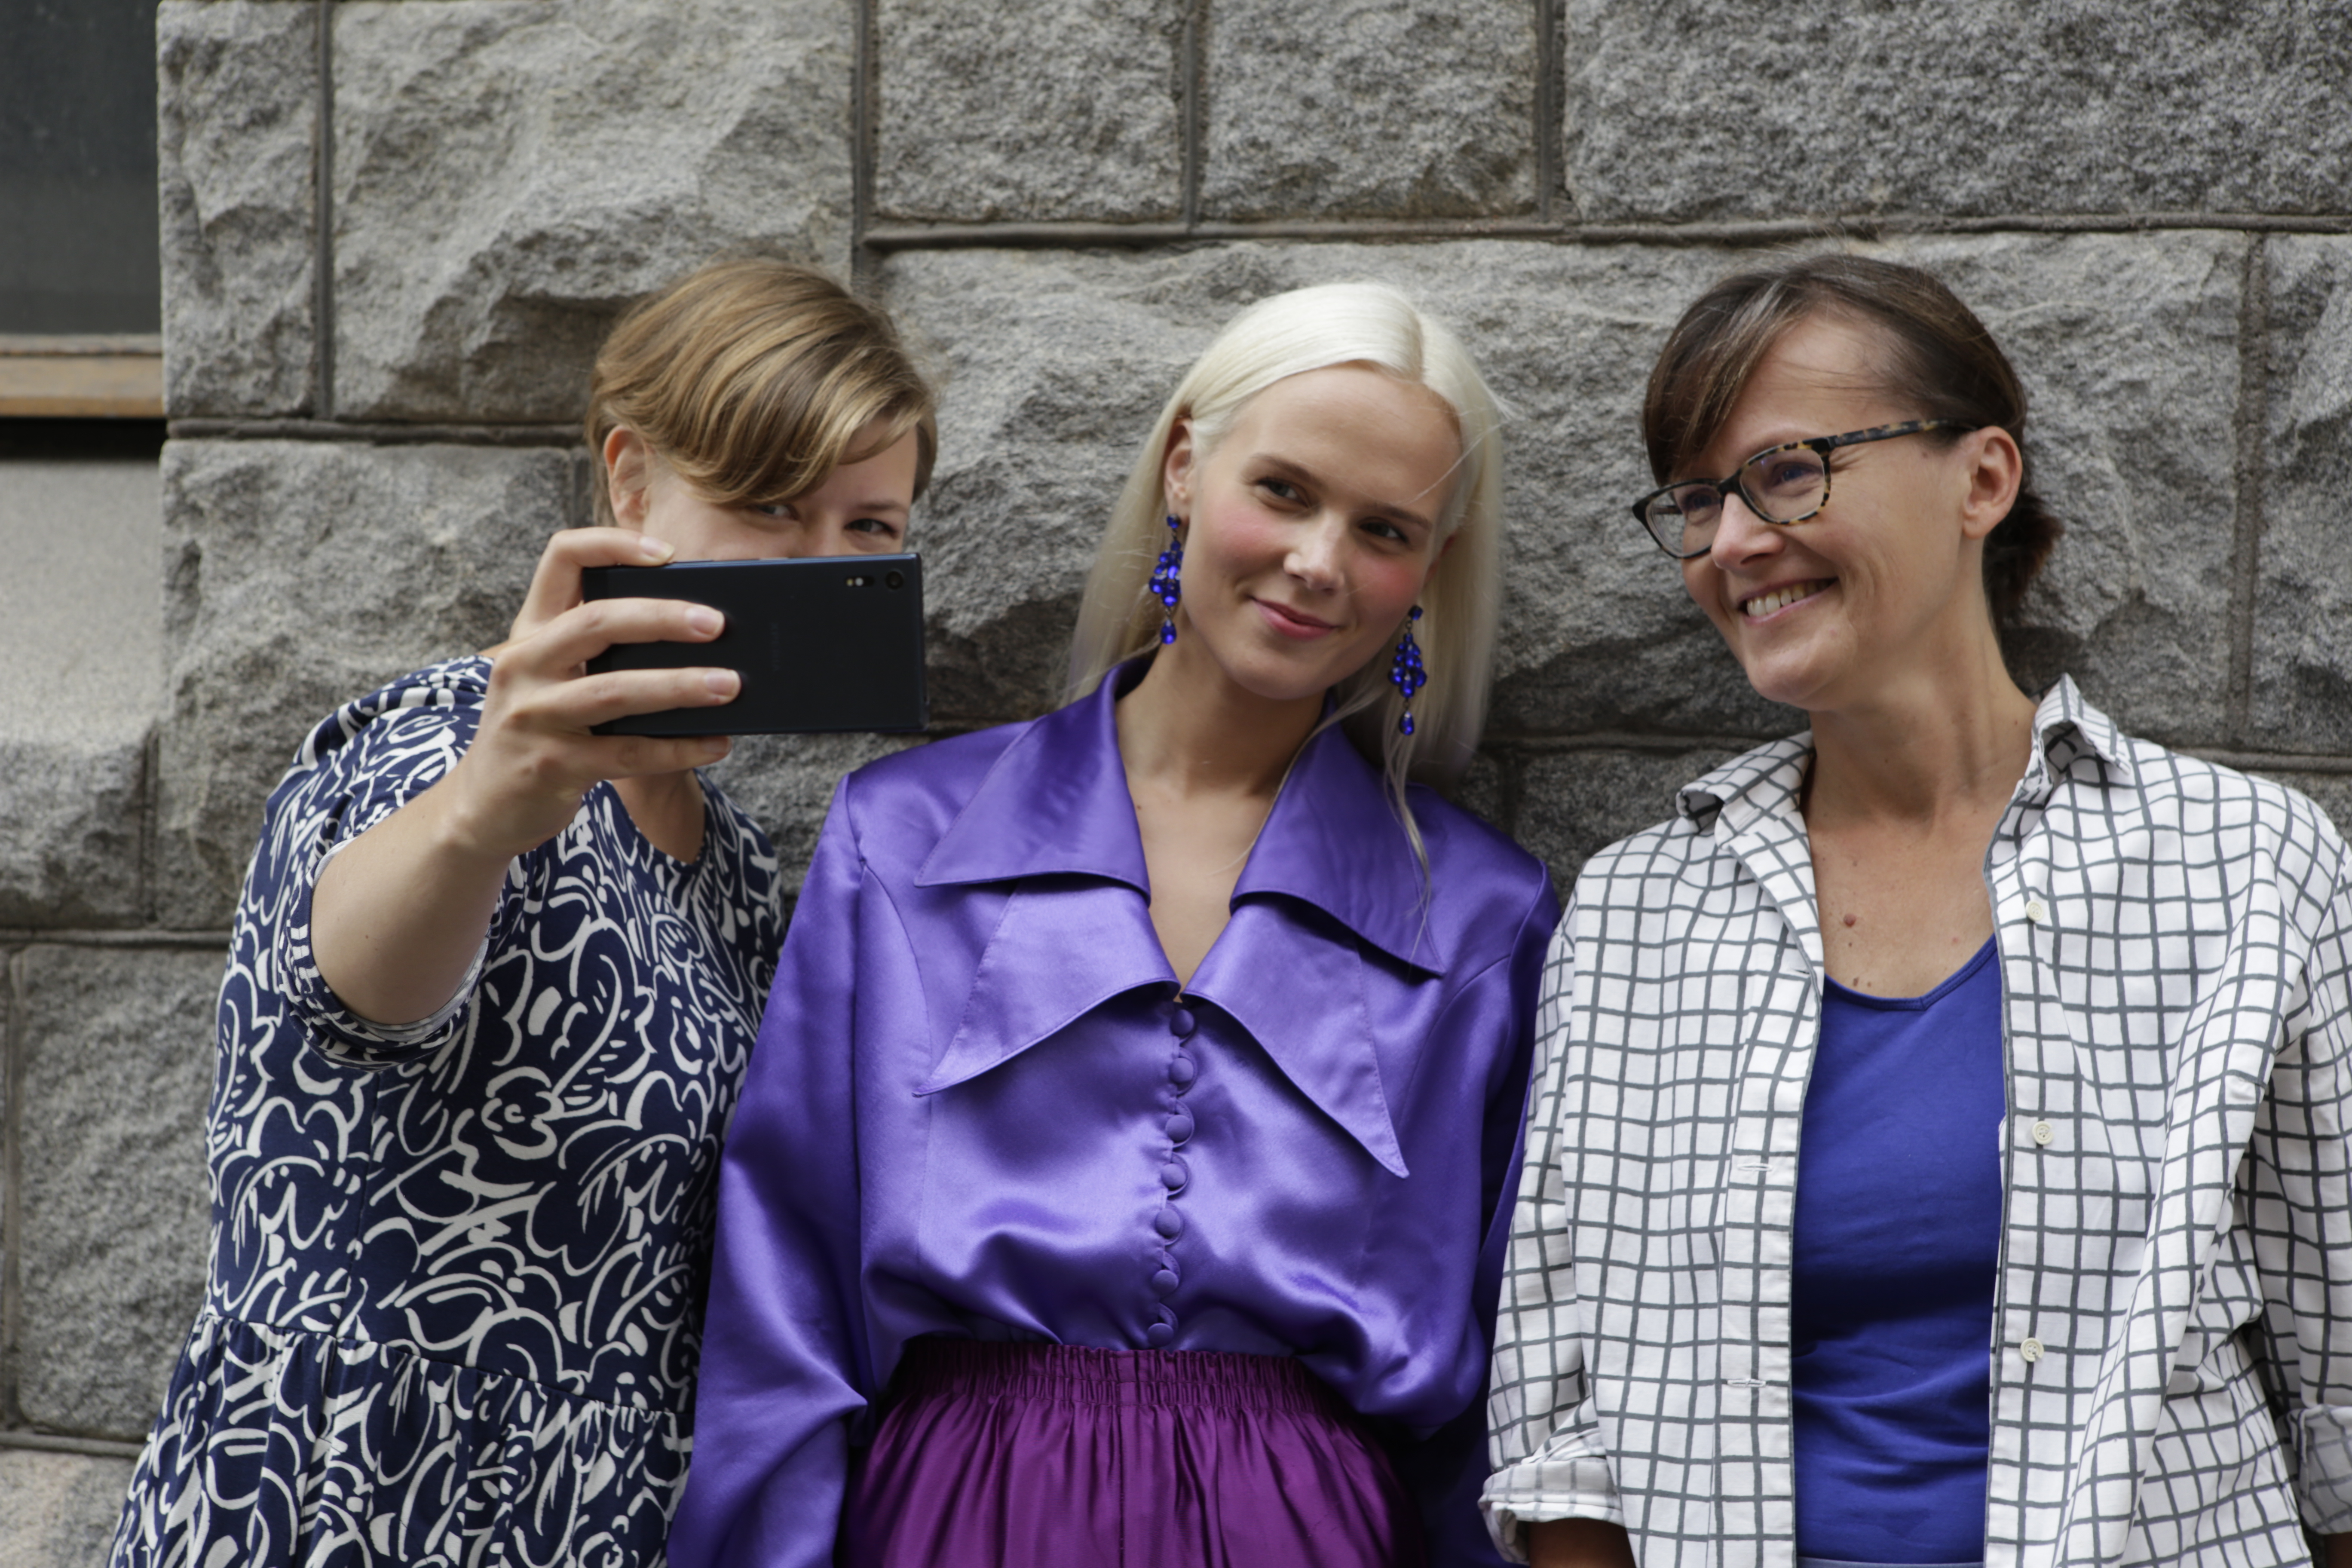 Kolme naista seisoo vierekkäin kiviseinän edessä. Yksi ottaa puhelimella selfietä kaikista kolmesta.